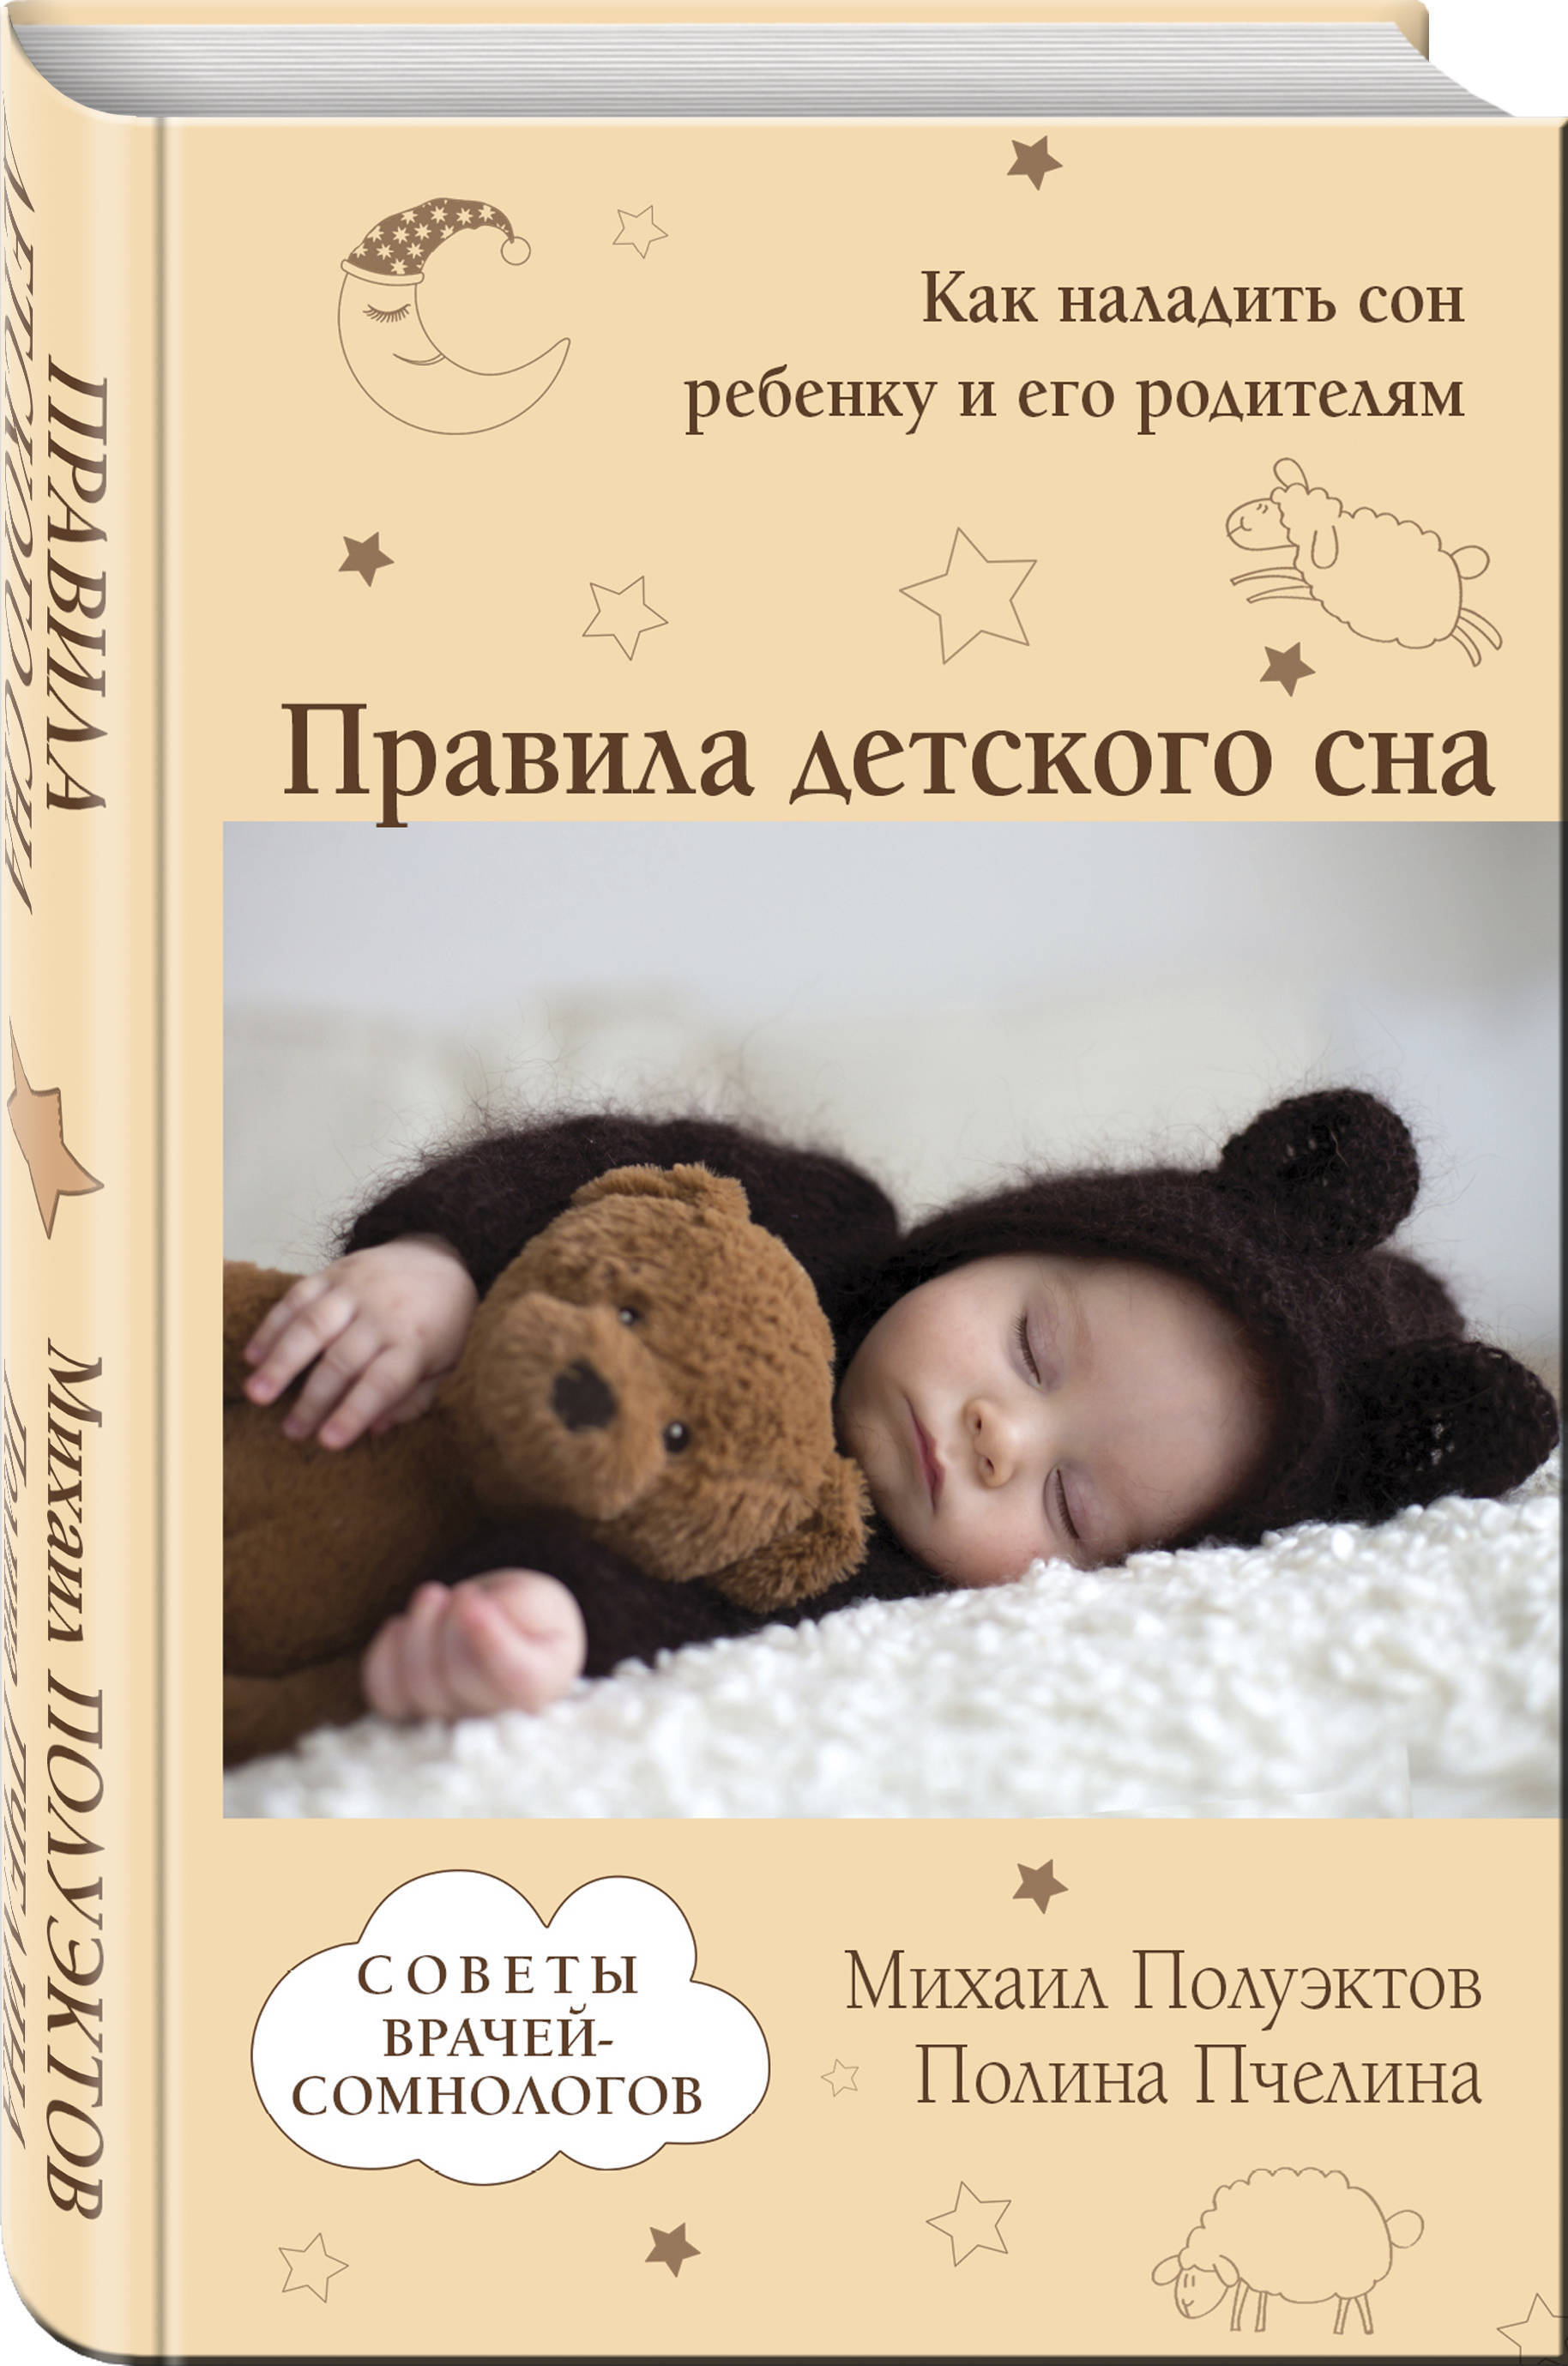 Спи малыш книга. Книги про сон для детей. Книга про детский сон. Как наладить сон ребенка. Правила детского сна.